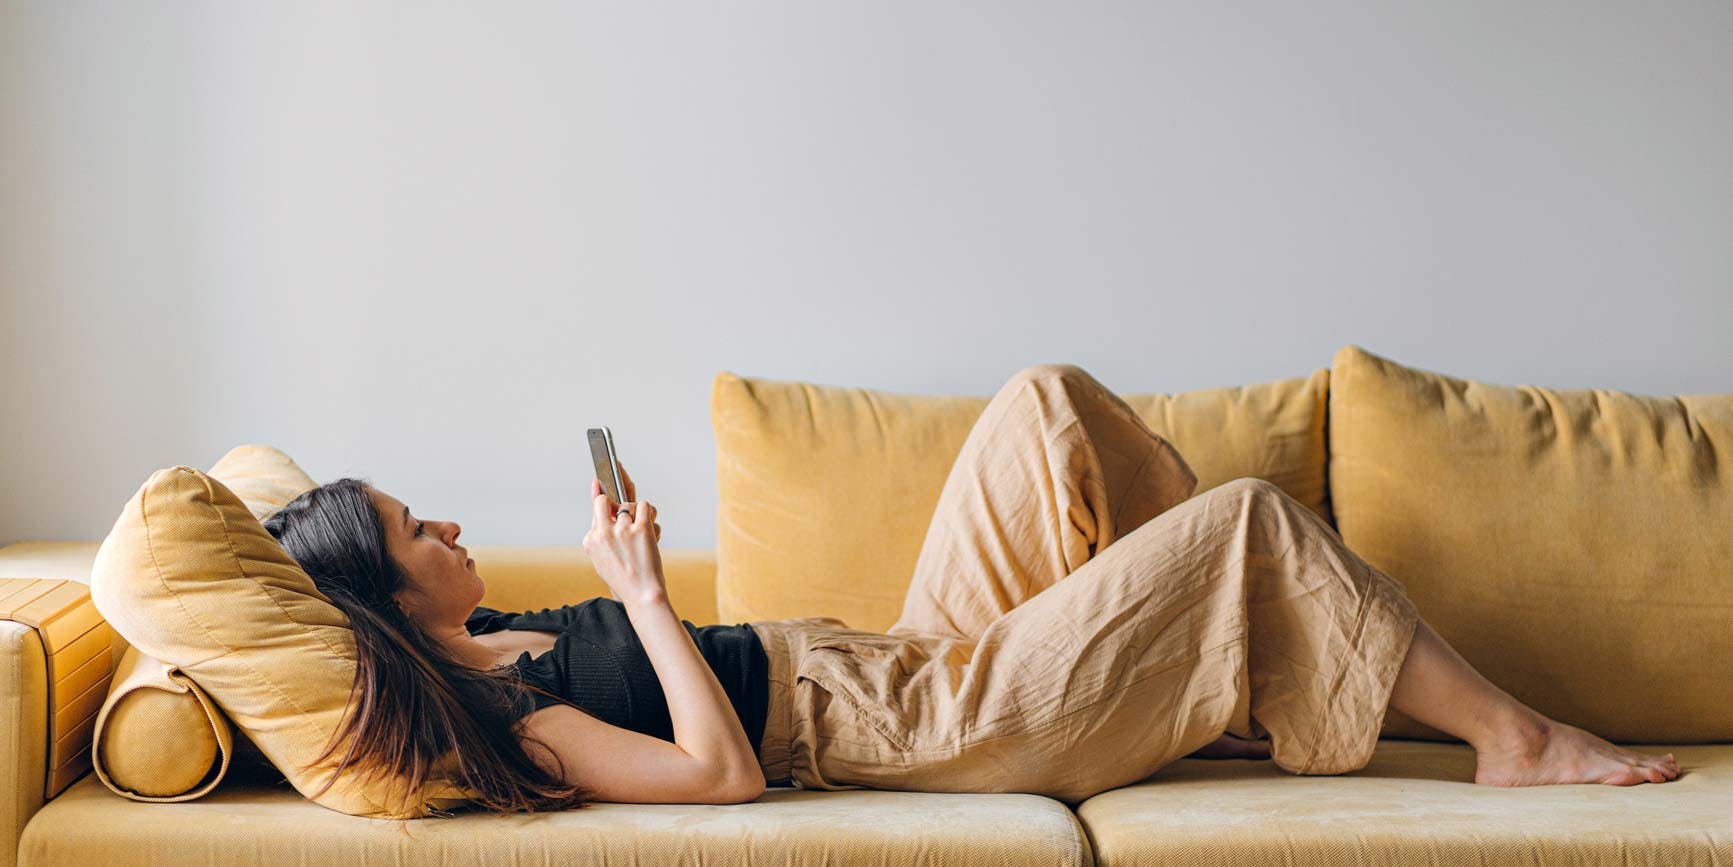 Mujer acostada en un sofá amarillo, interactuando con su teléfono